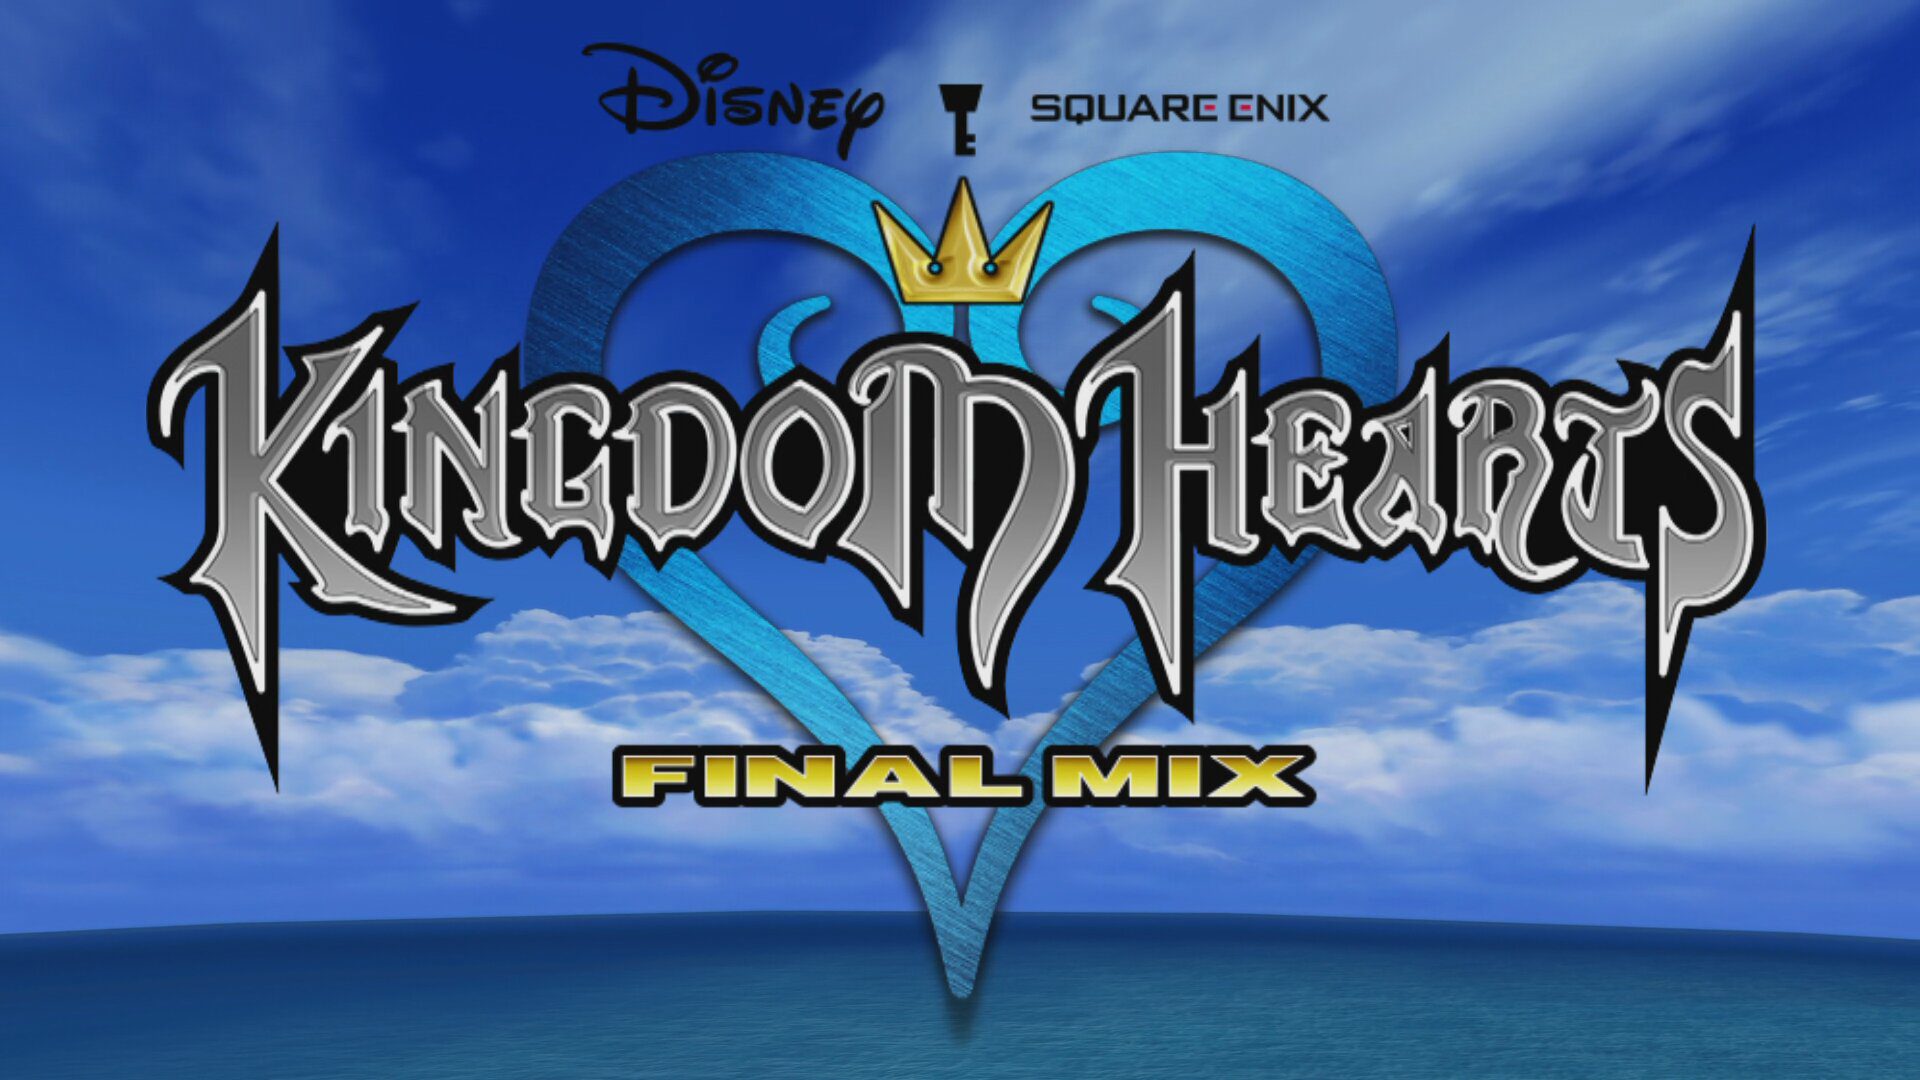 Last Kingdom Hearts MIX Logo